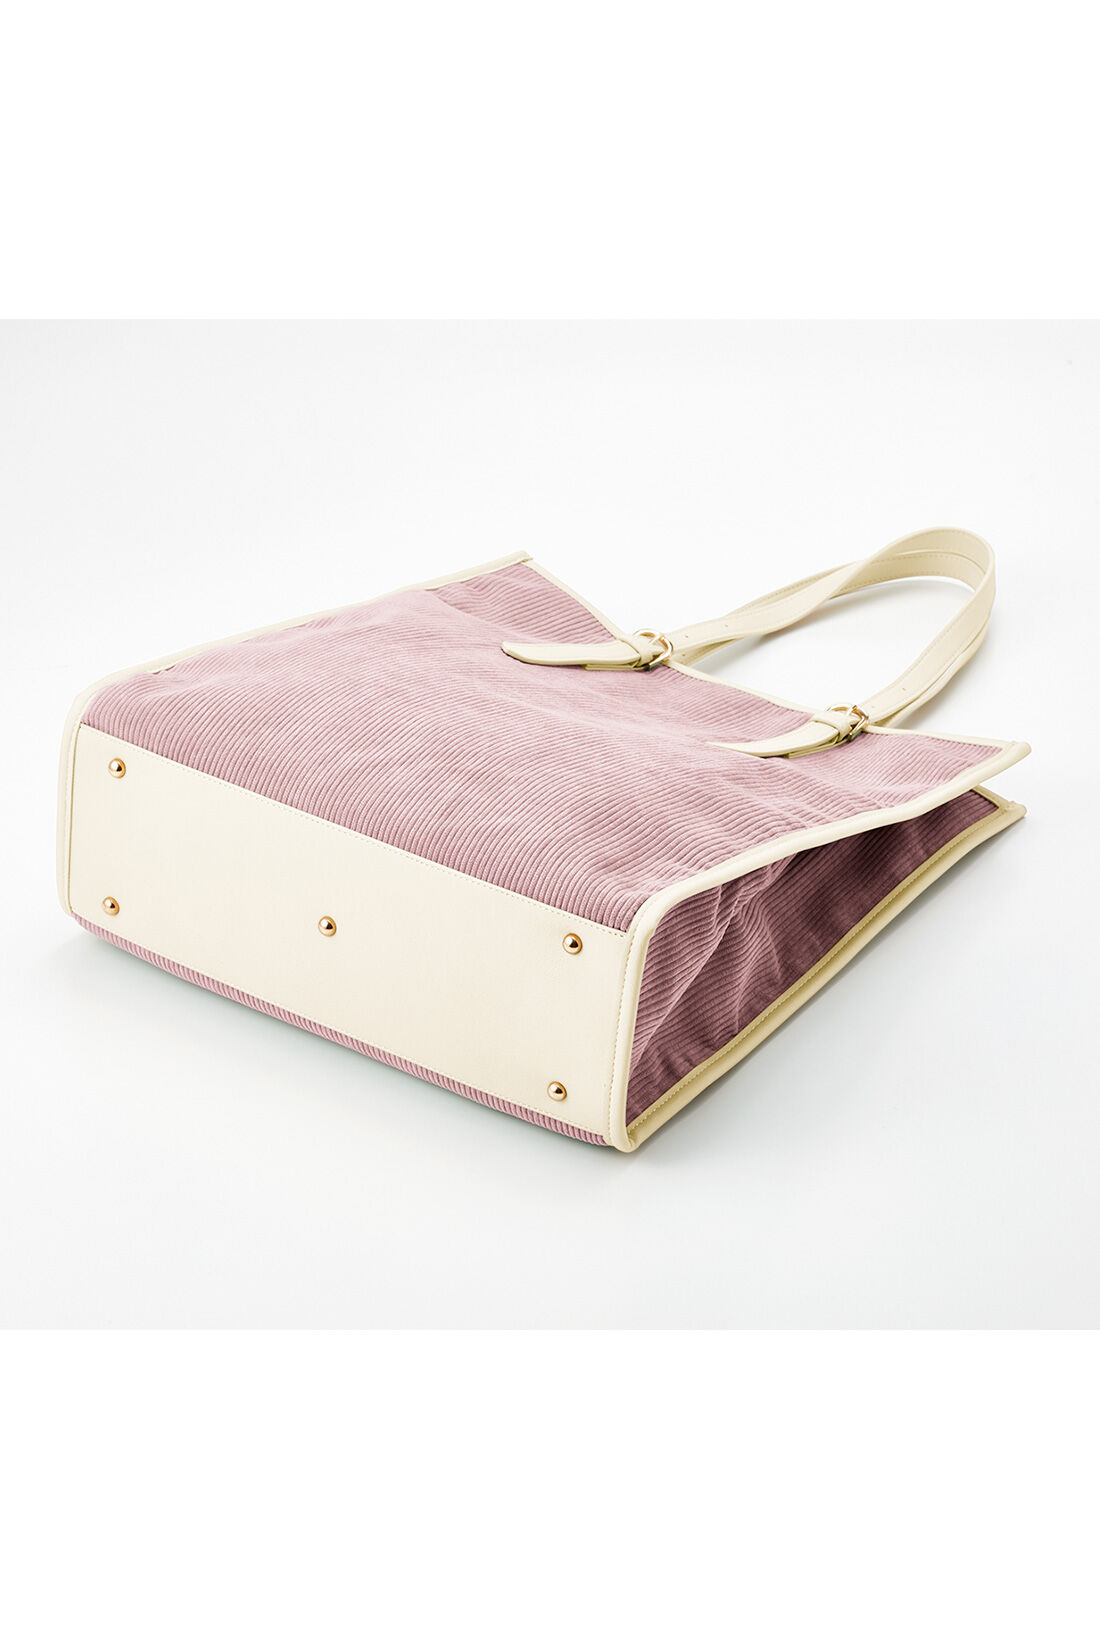 OSYAIRO|OSYAIRO　ジャンボうちわが入るコーデュロイトートバッグ〈ピンク〉|底びょう付きなので床置きも気になりません。